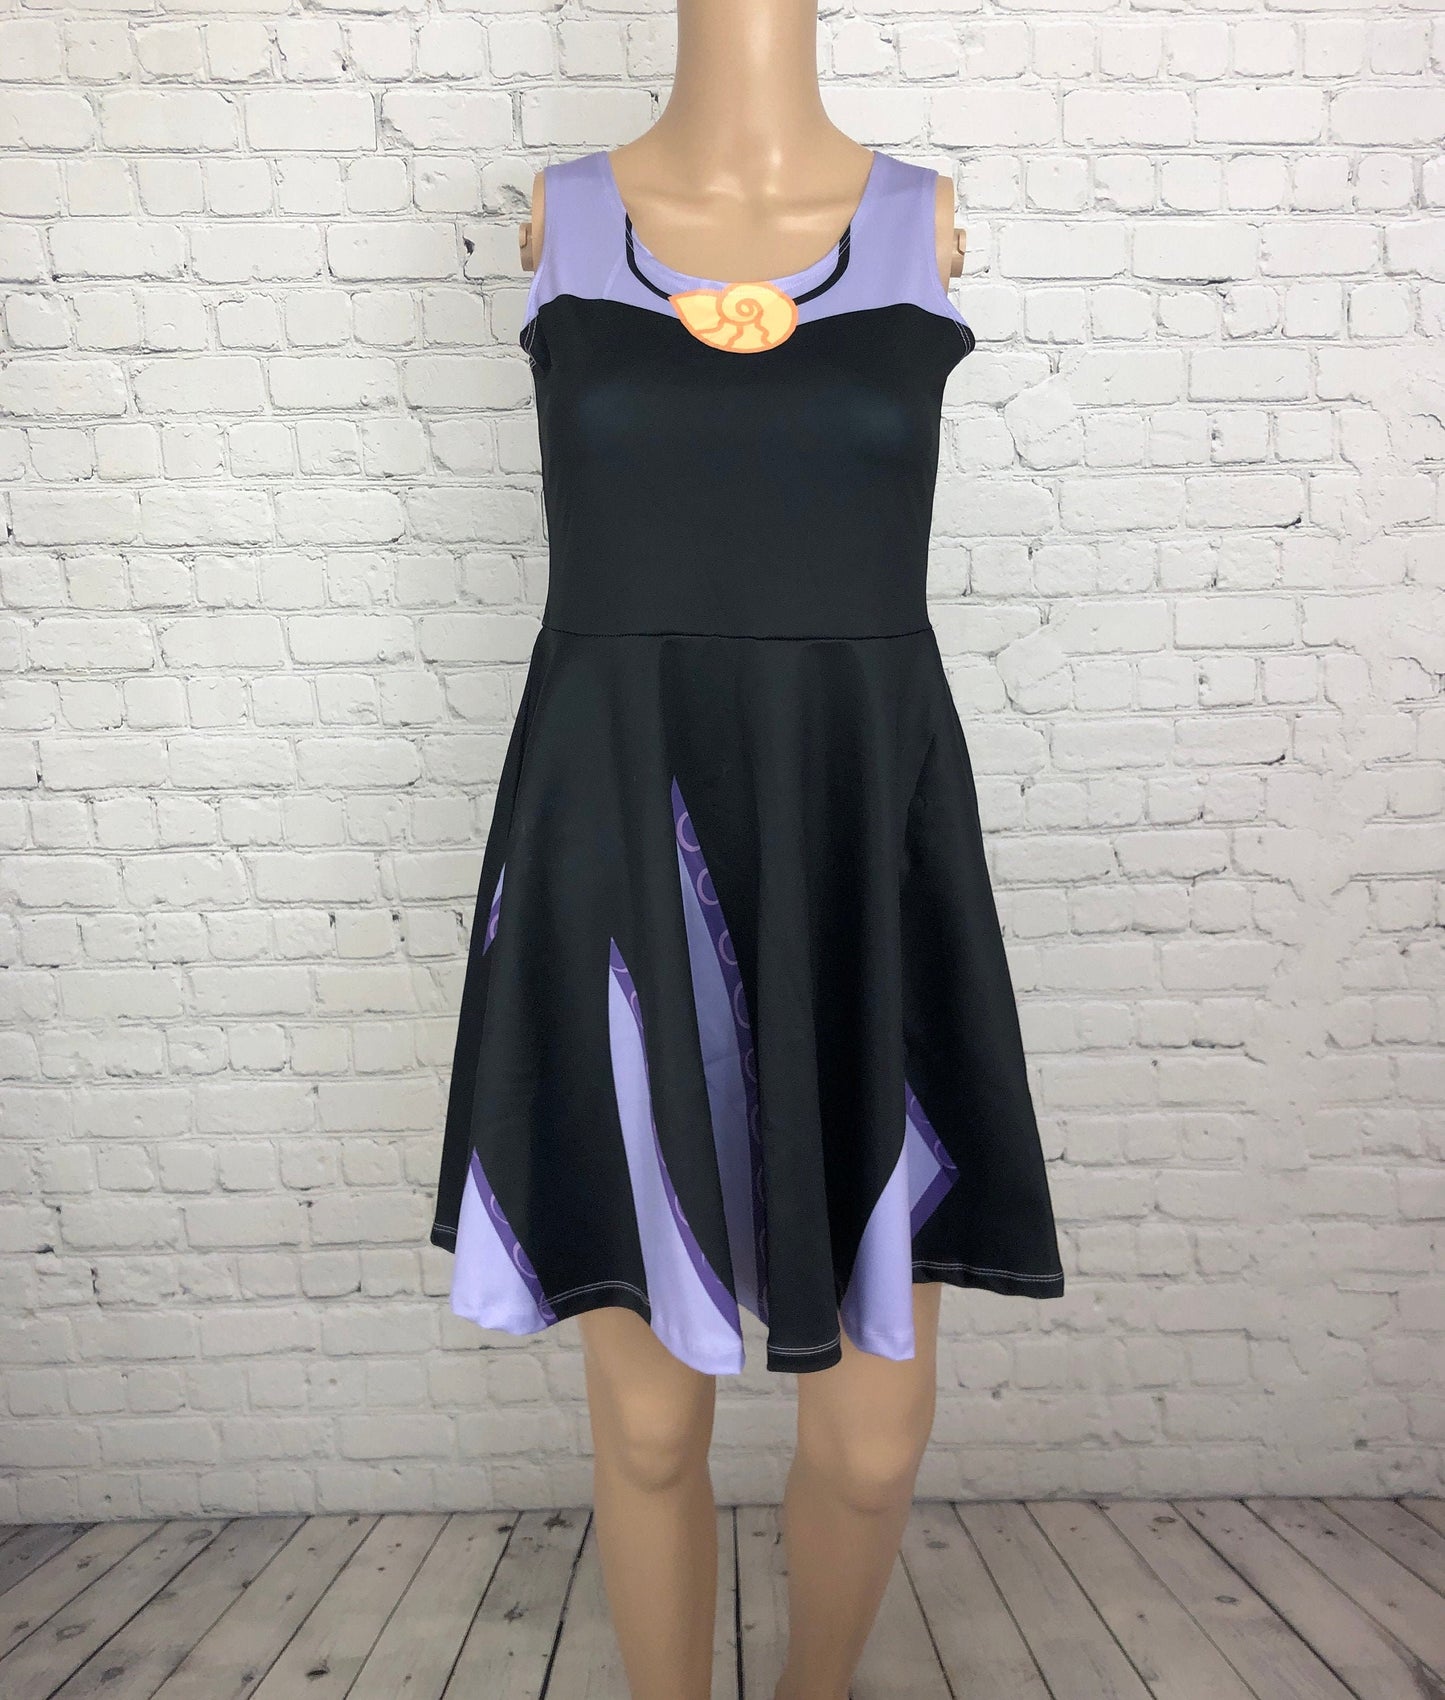 RUSH ORDER: Ursula Little Mermaid Inspired Skater Dress